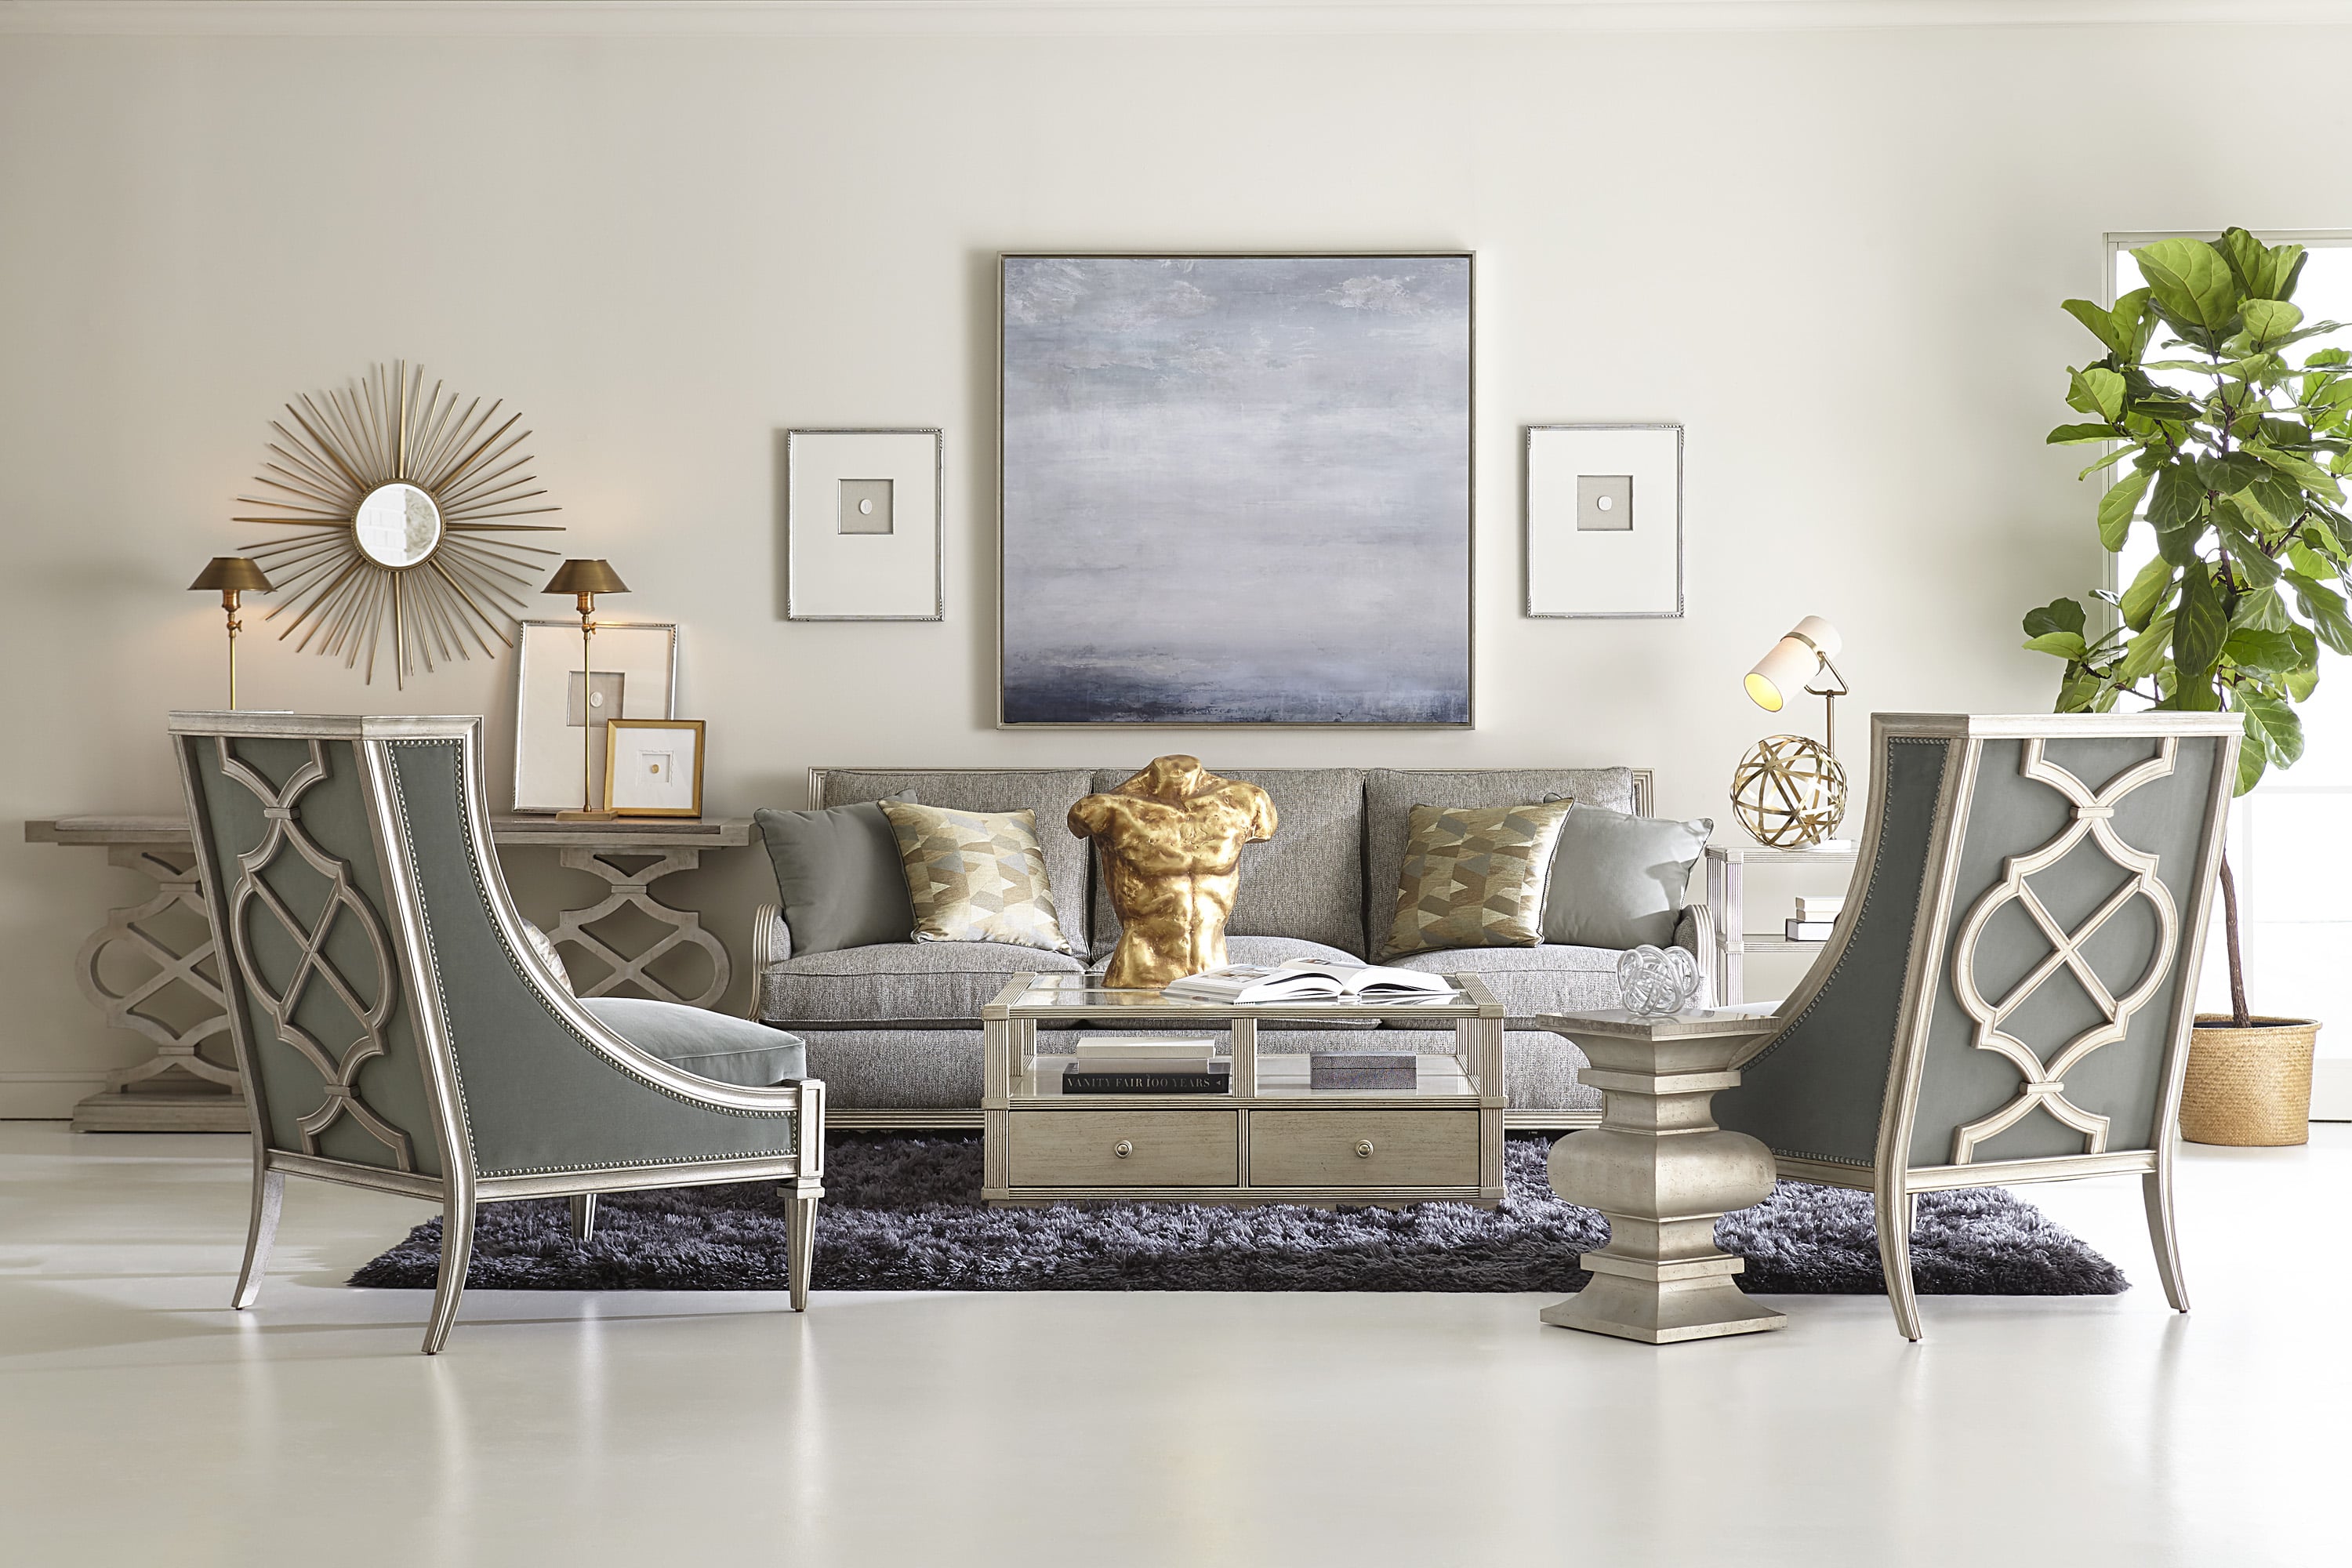 A.R.T Furniture “cơn địa chấn” mới trong thị trường nội thất cao cấp